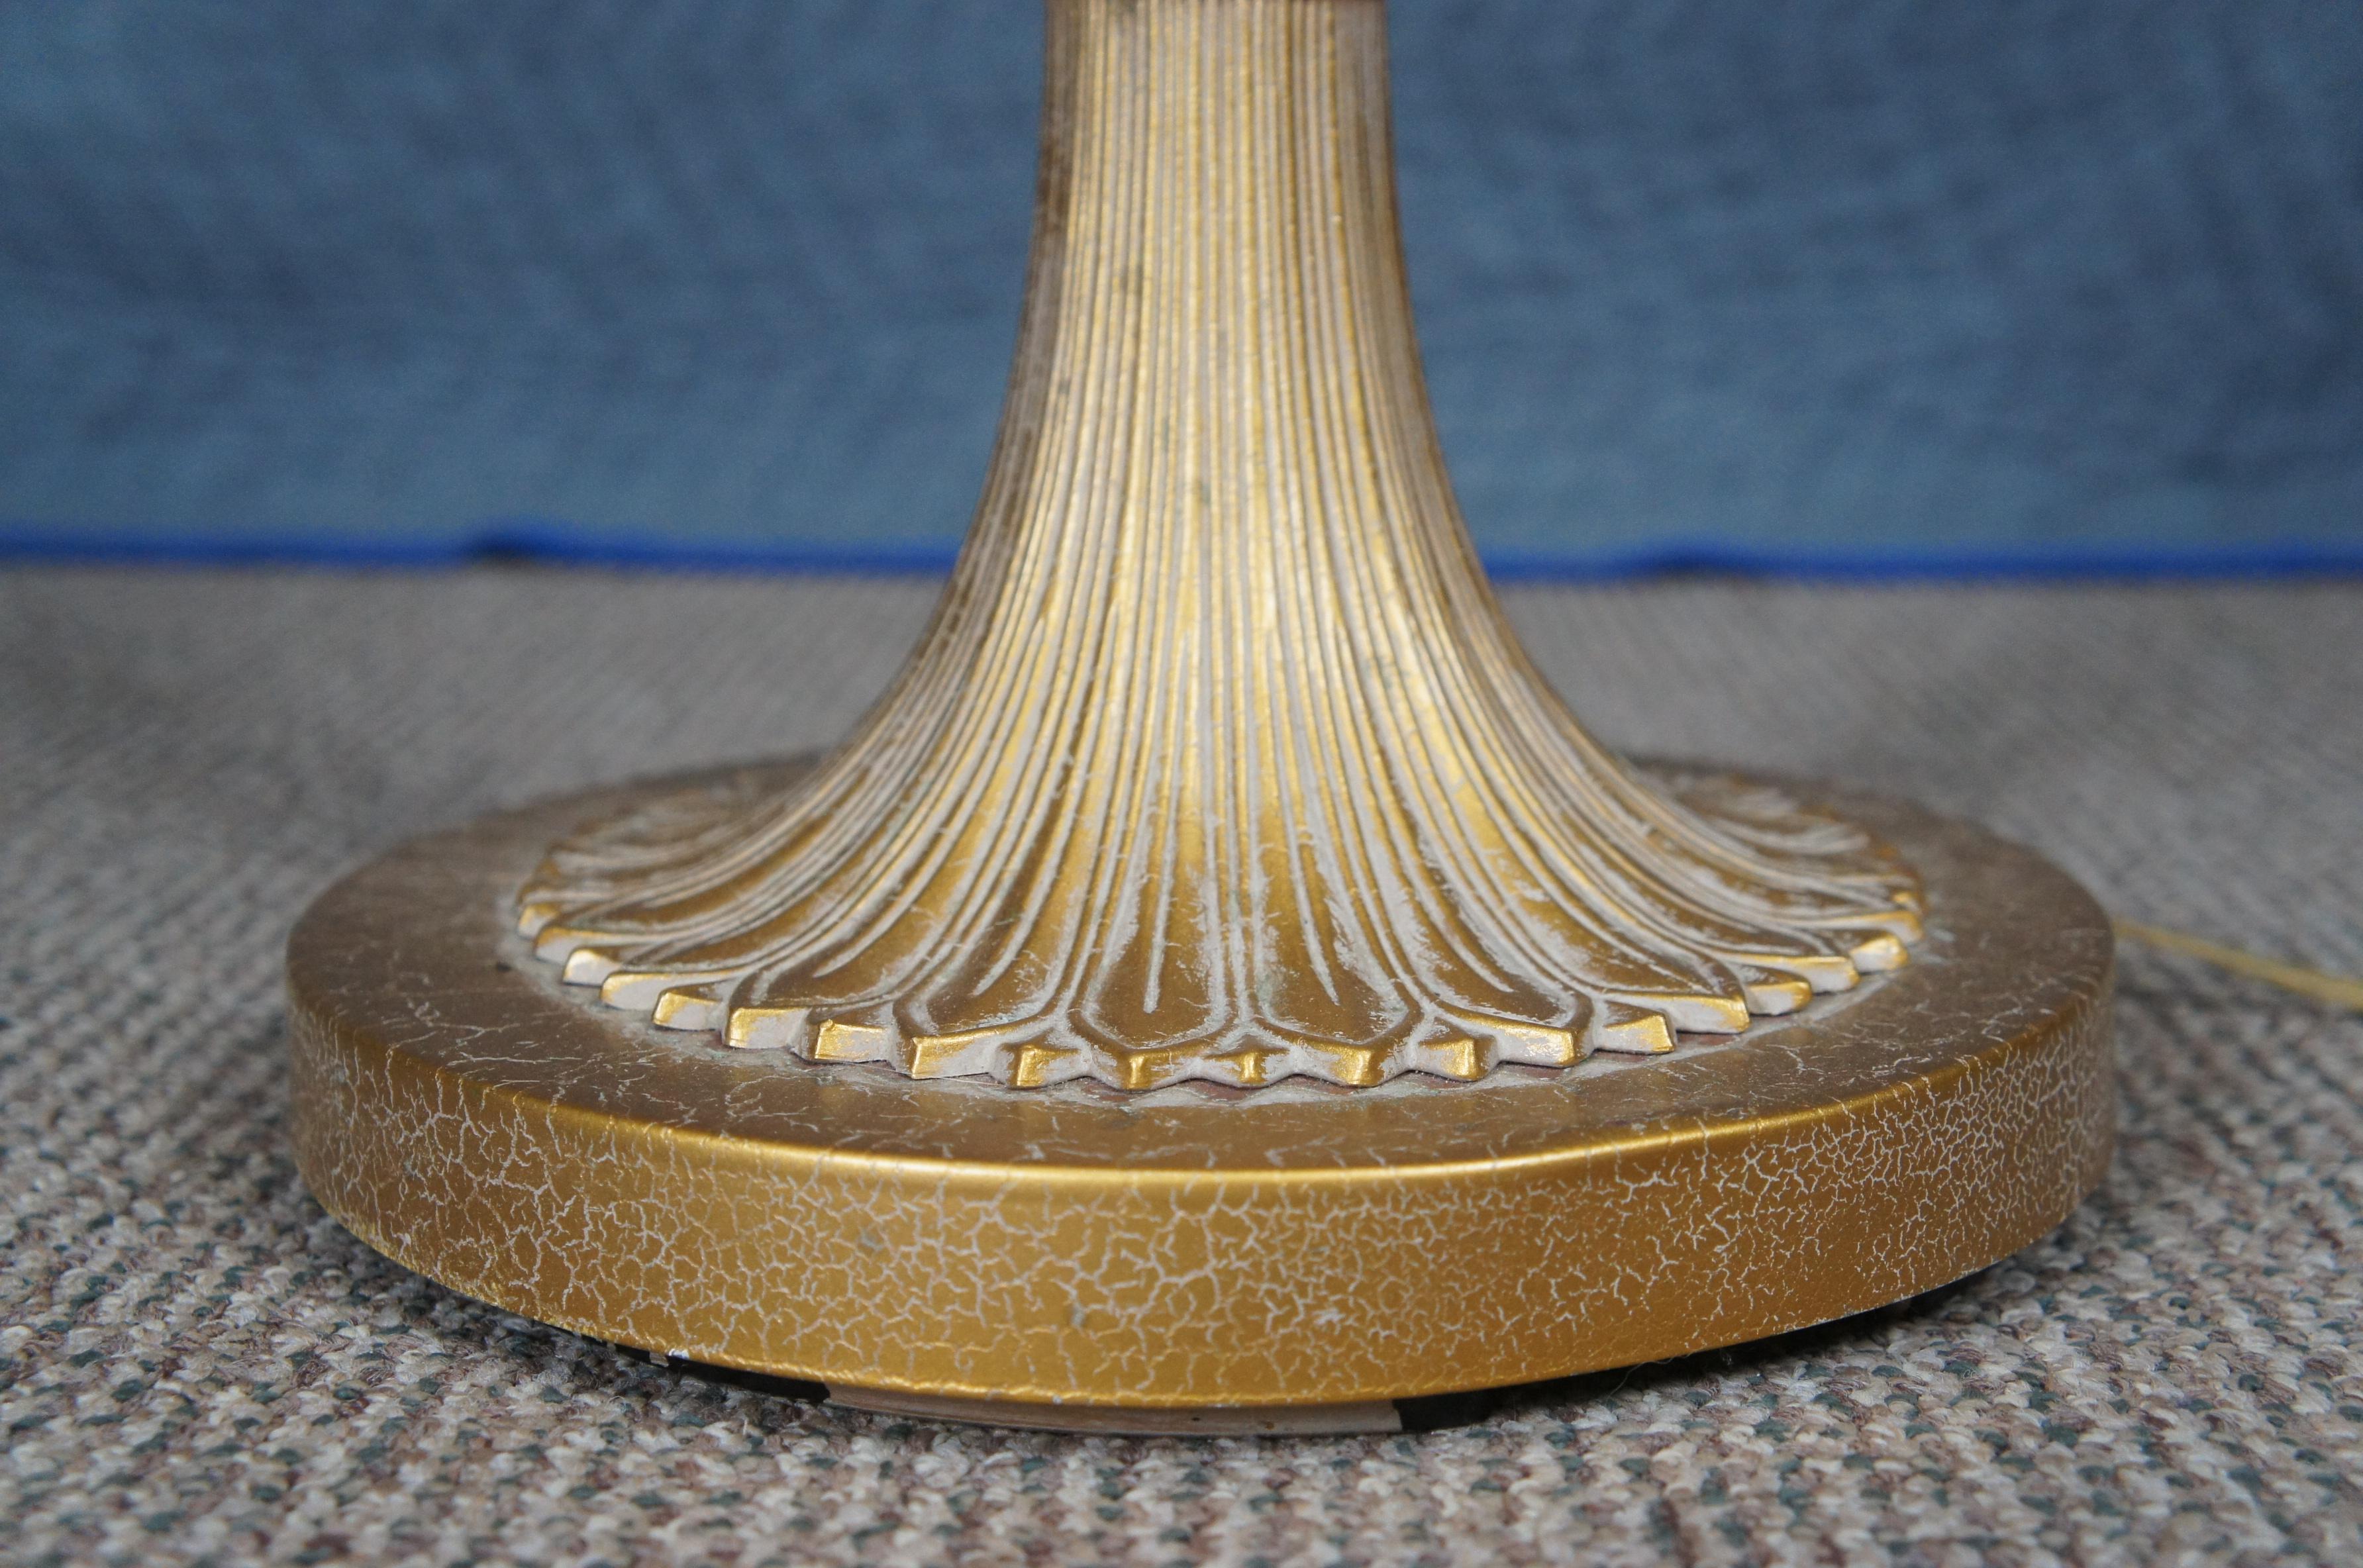 Vintage Stiffel Hollywood Regency Gold Pineapple Modern Floor Lamp & Shade 52